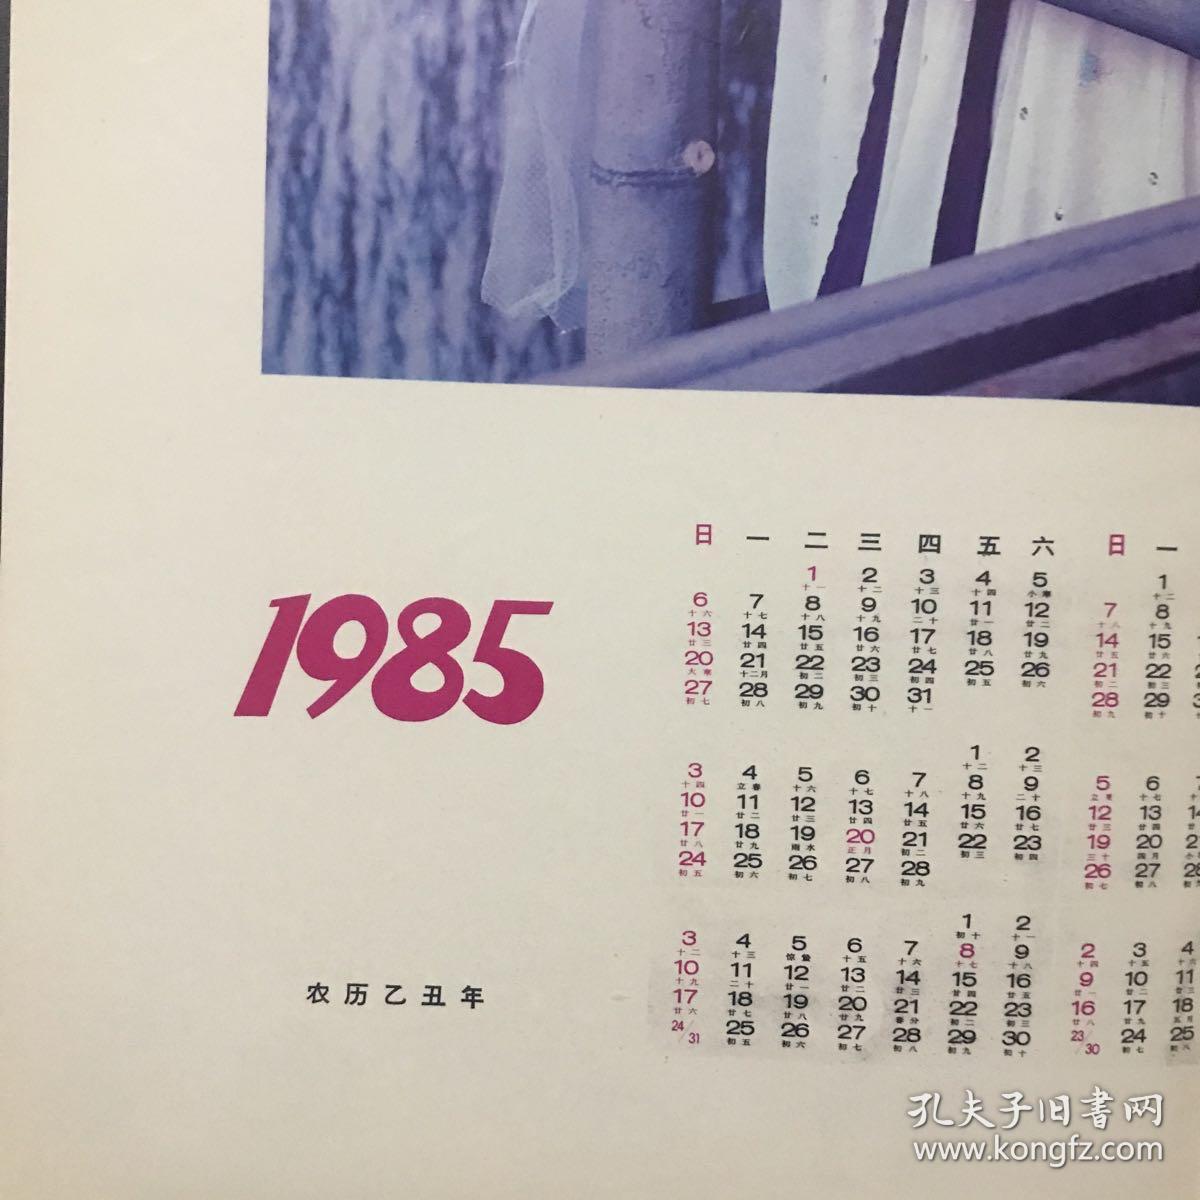 1985年摄影年历《珍珠姊妹》2张连体